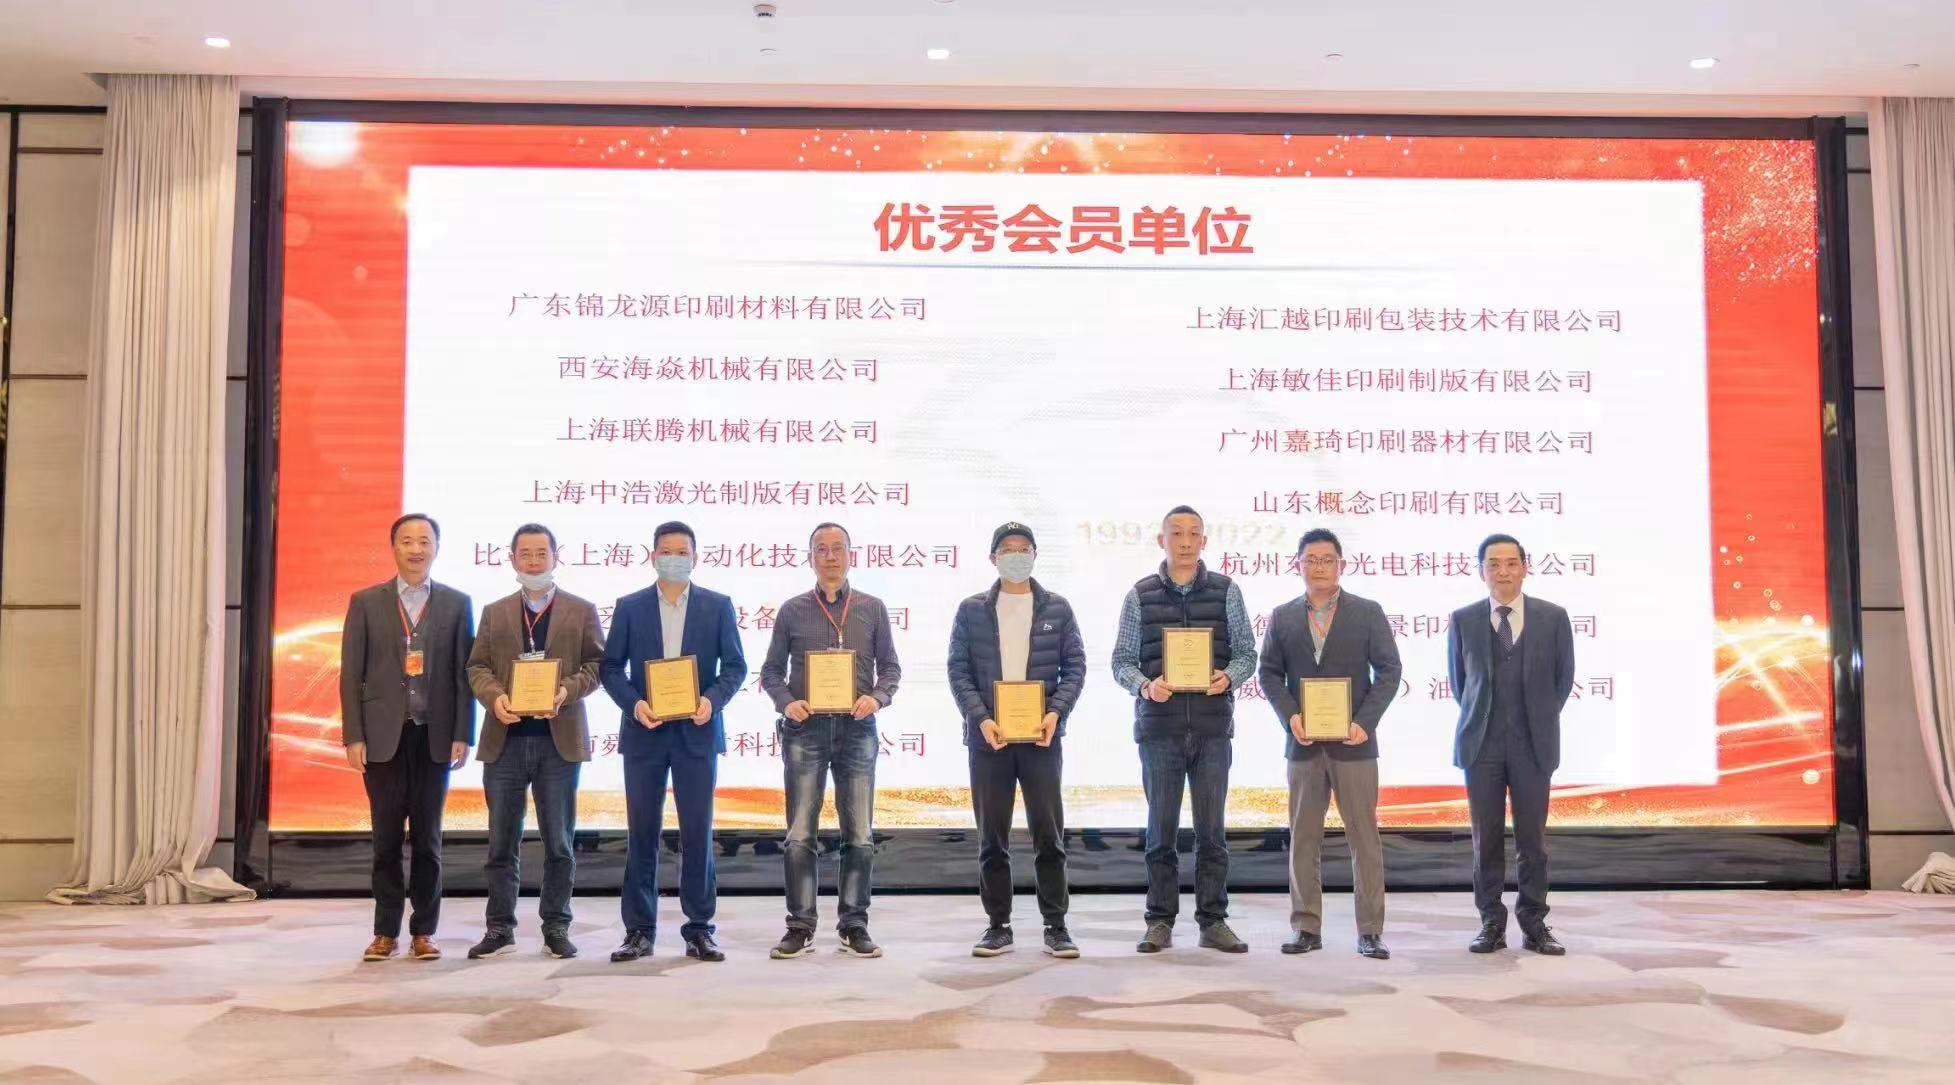 舜豐榮獲“中國印刷技術協會”的表彰